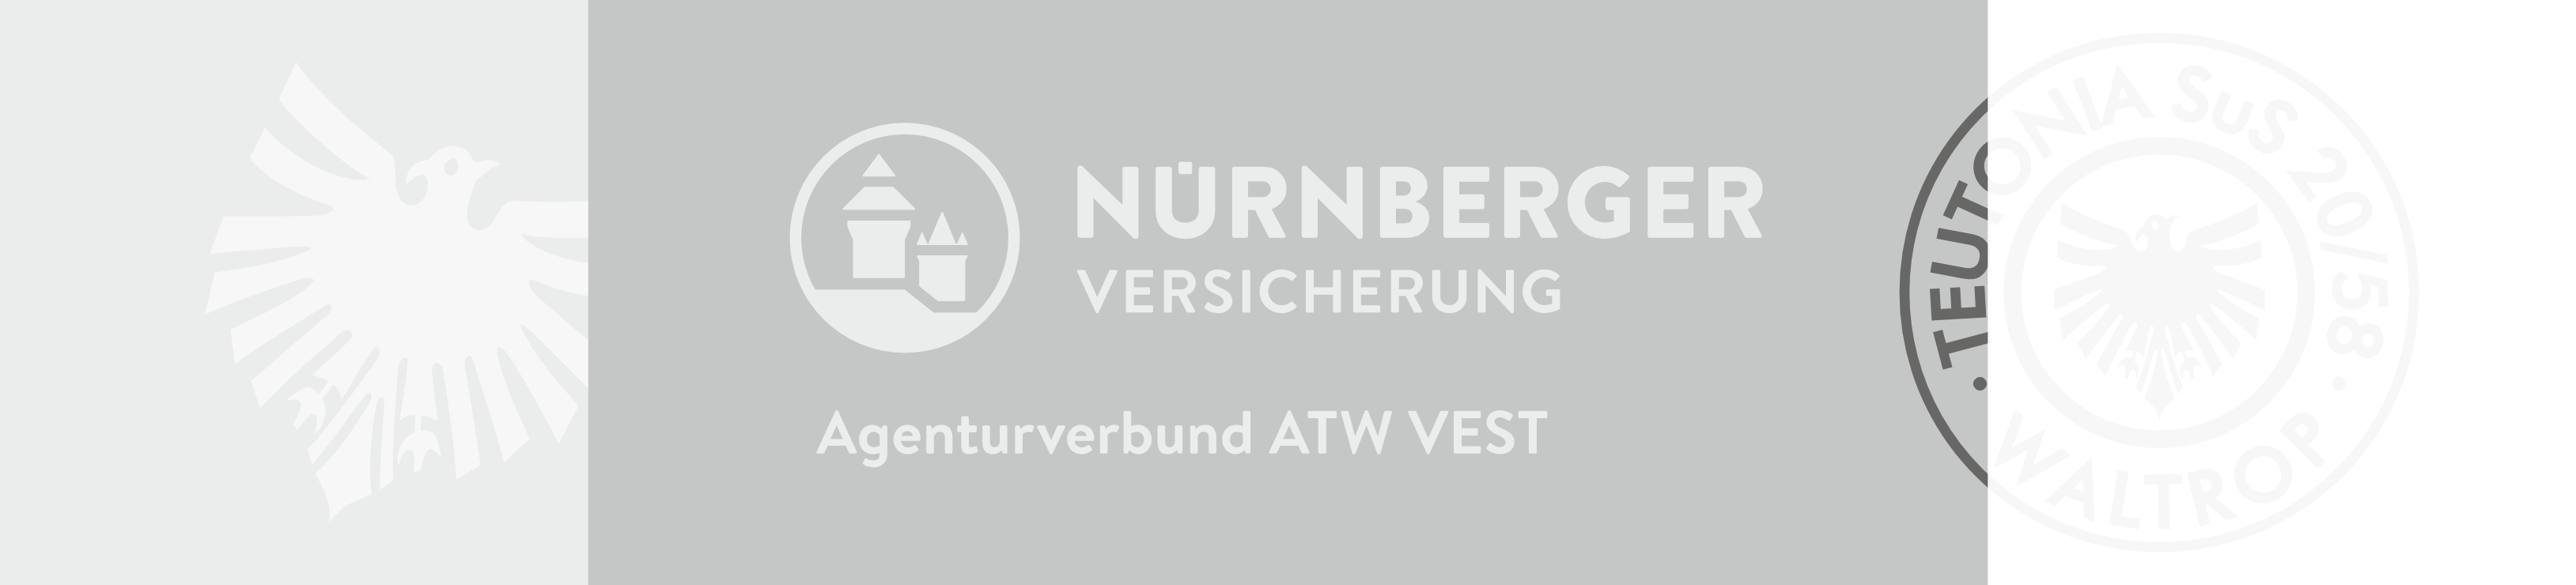 Logo von ATW Vest Nürnberger Versicherungen